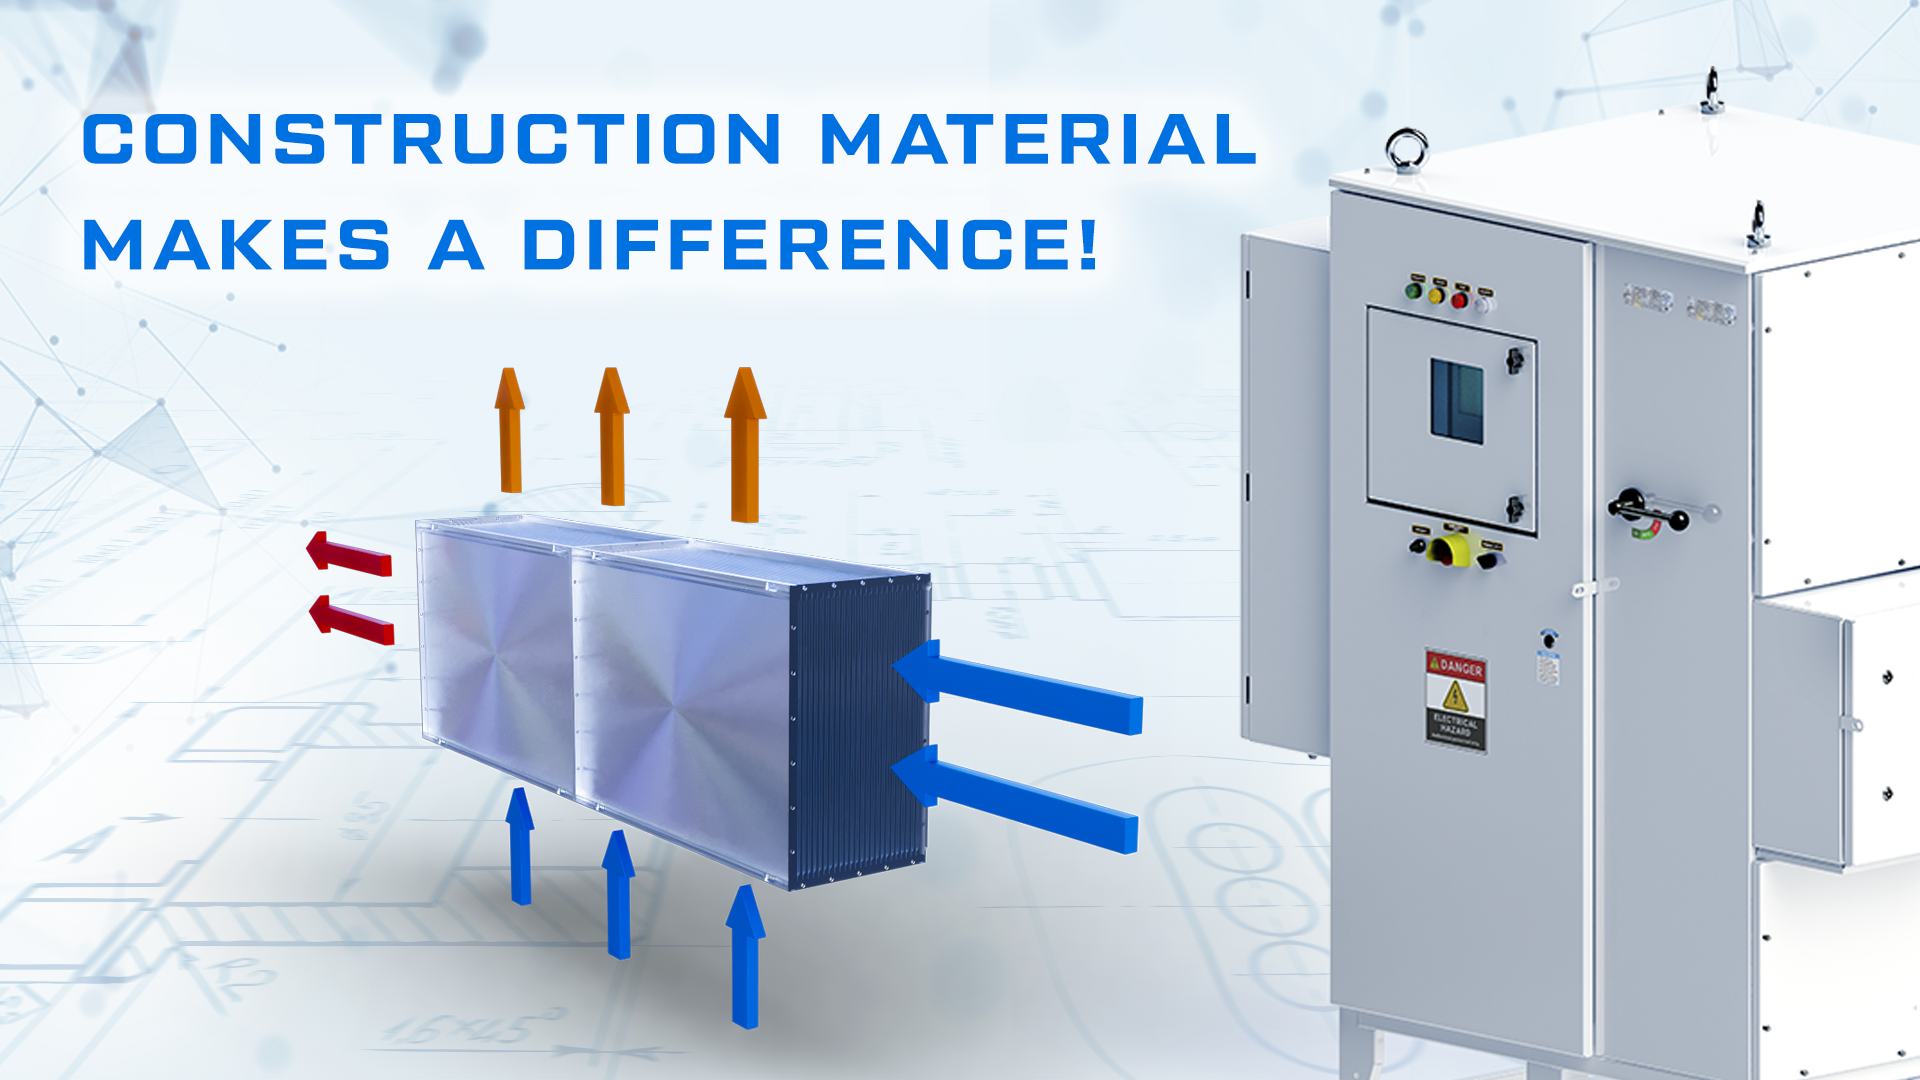 El material de construcción hace la diferencia! Los intercambiadores de calor Triol están fabricados en acero inoxidable.